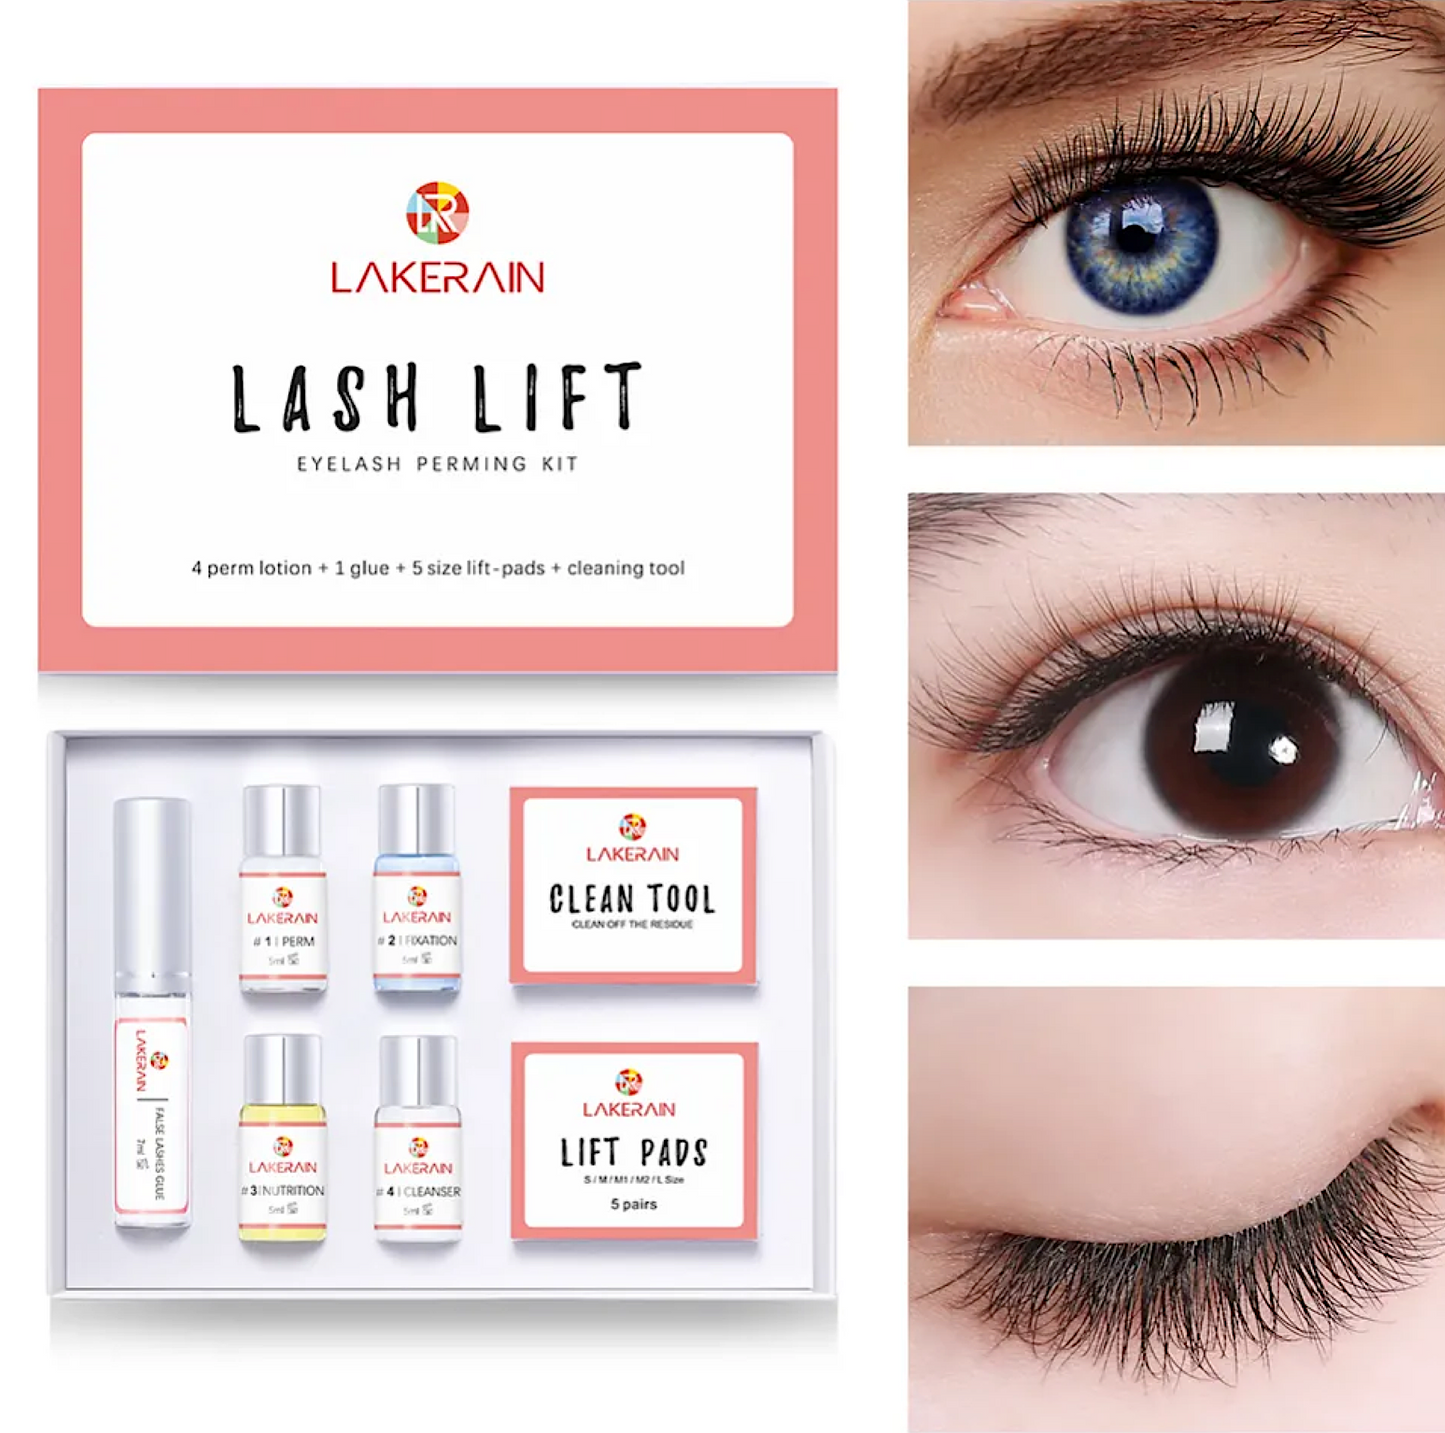 Lakerain Lash Lift Eyelash Perming Kit